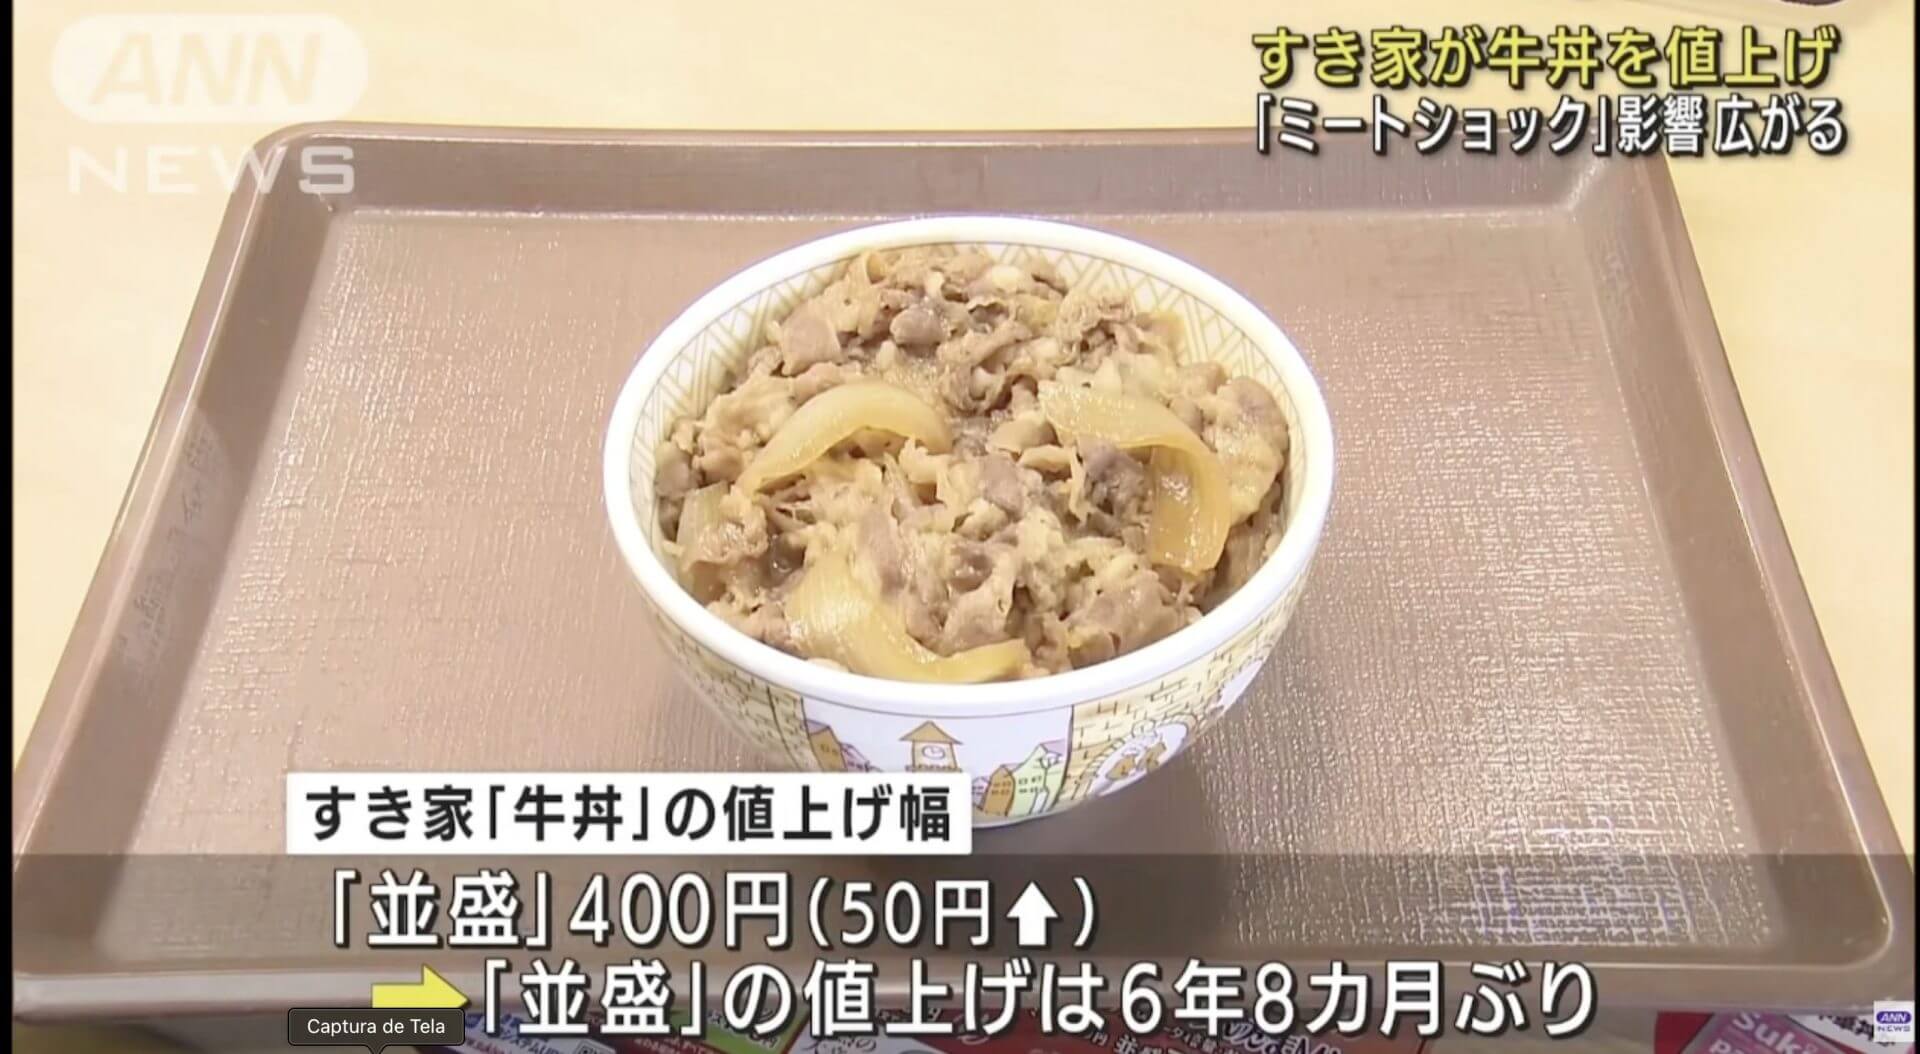 Sukiya aumenta preço de seu tradicional prato de gyudon